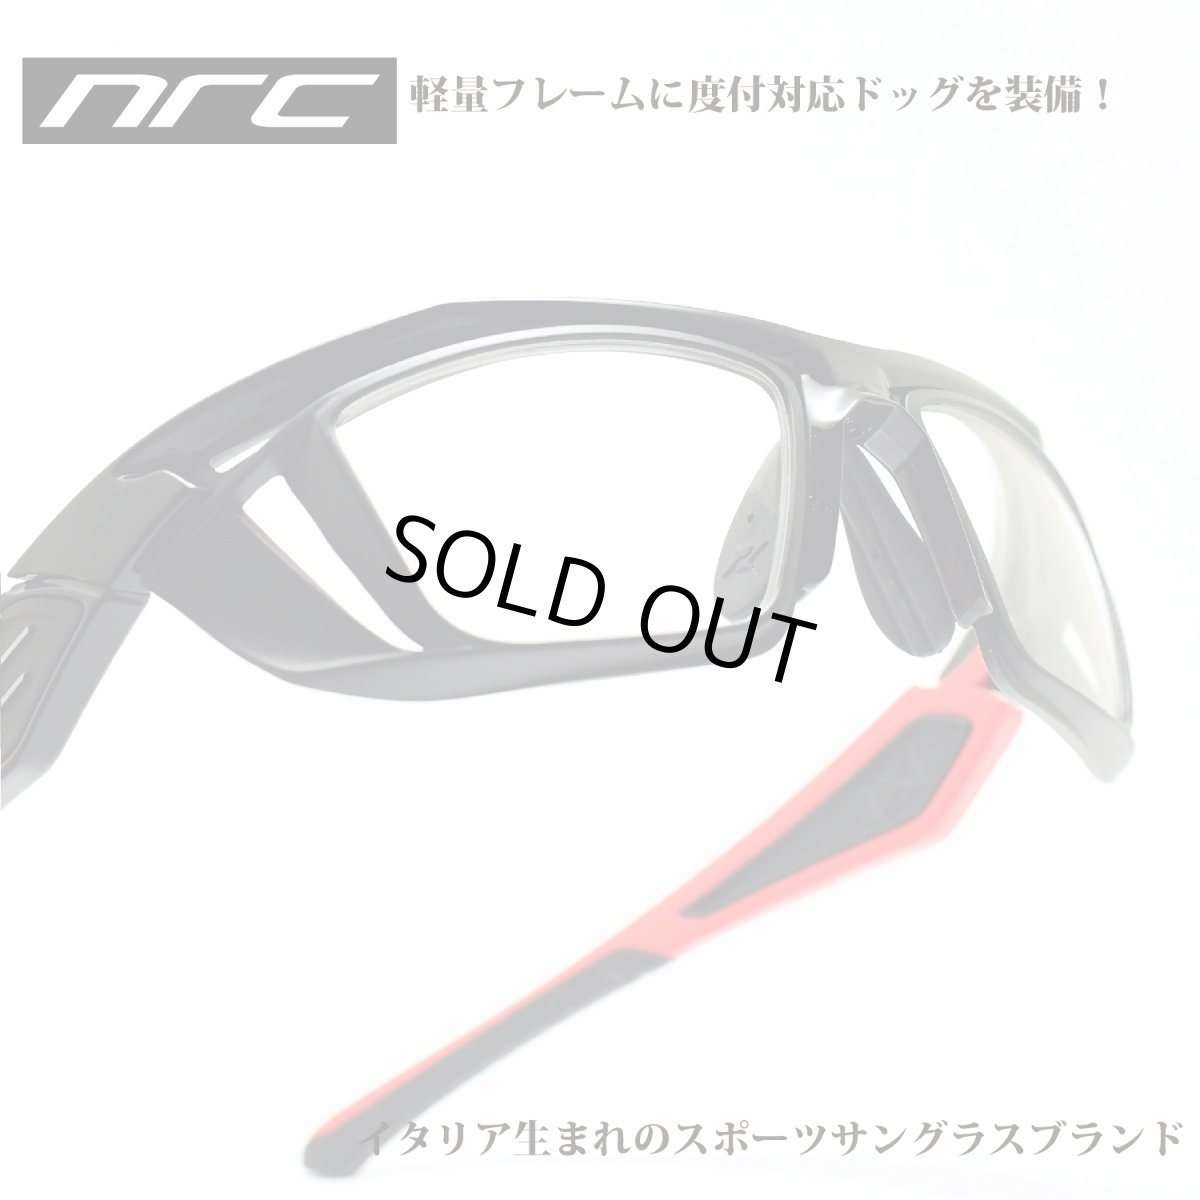 画像1: nrc エヌアールシー X5 DOC BLOCKHAUS/OPTICAL DOC  メガネ 眼鏡 めがね メンズ レディース おしゃれ ブランド 人気 おすすめ フレーム 流行り 度付き レンズ サングラス (1)